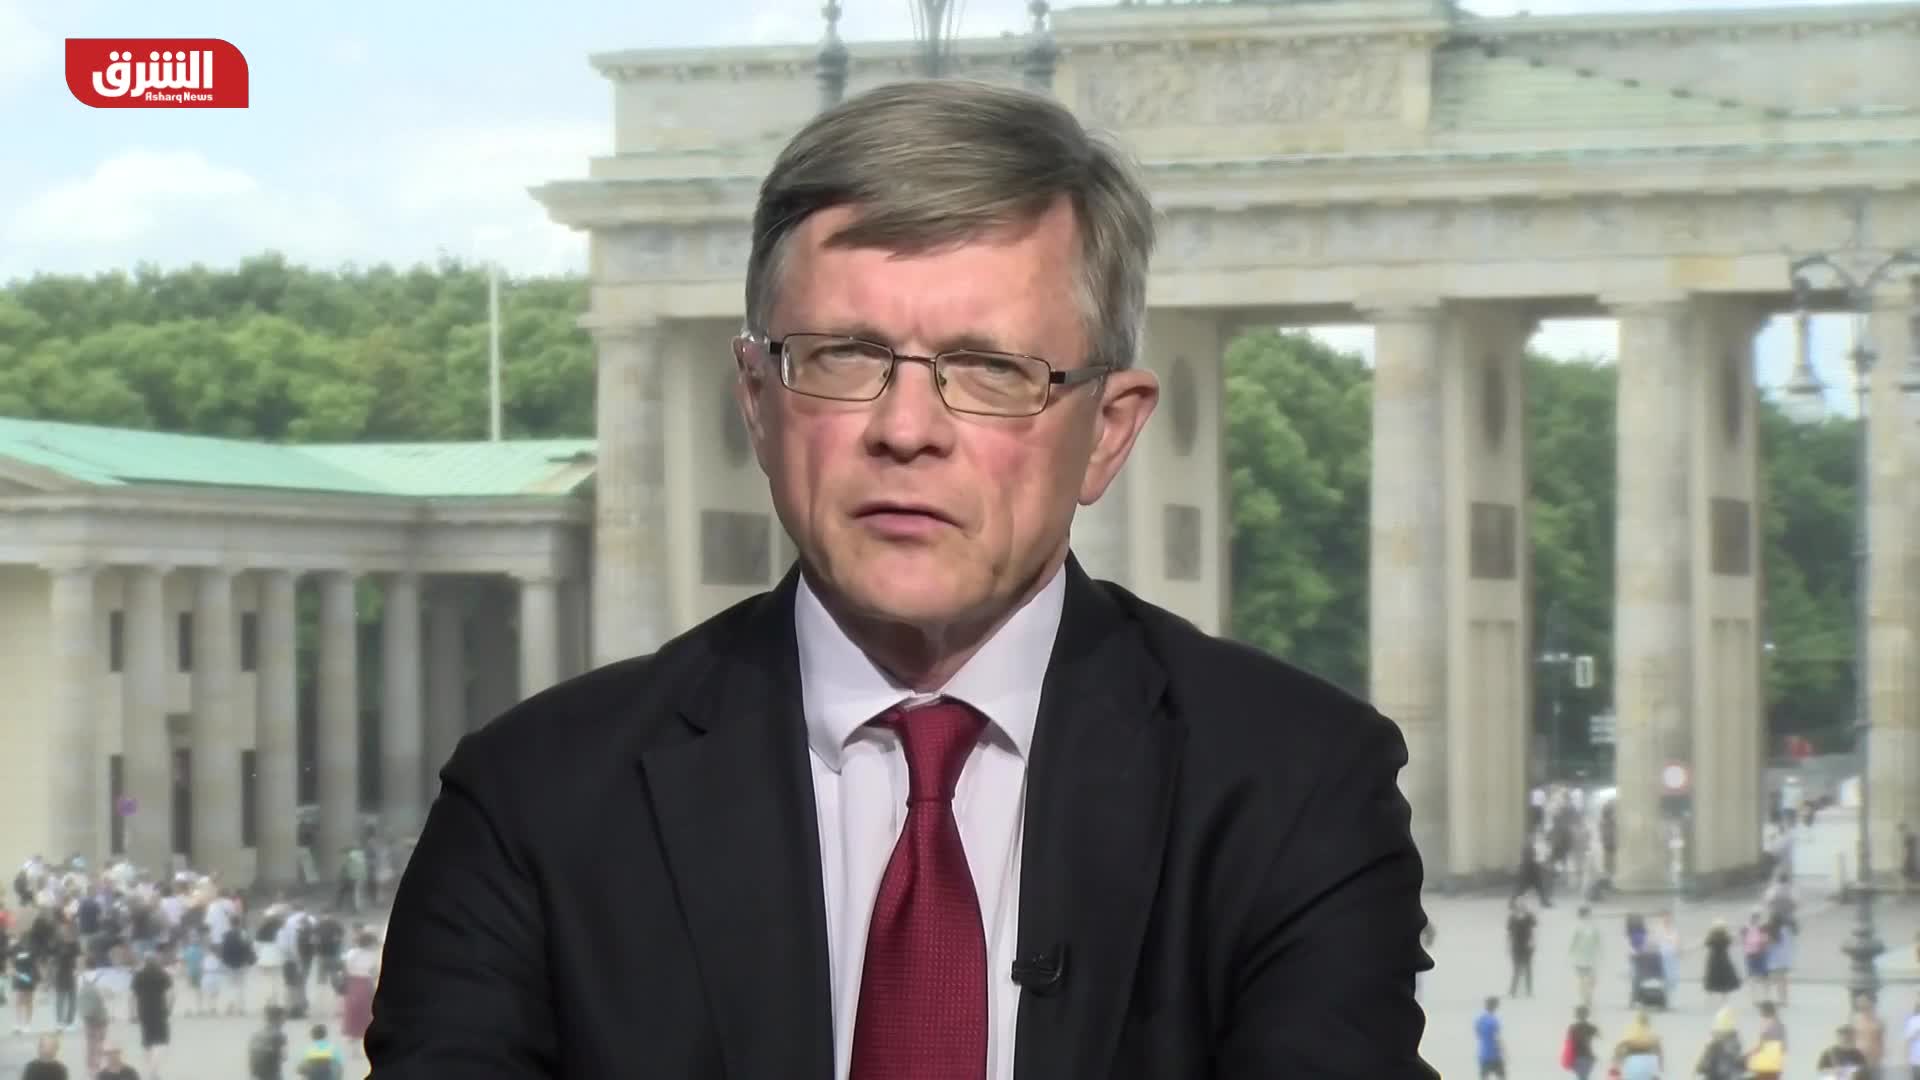 إيفالد كونيج: يجب ألا نتوقع كثيرا من مؤتمر إعادة إعمار أوكرانيا